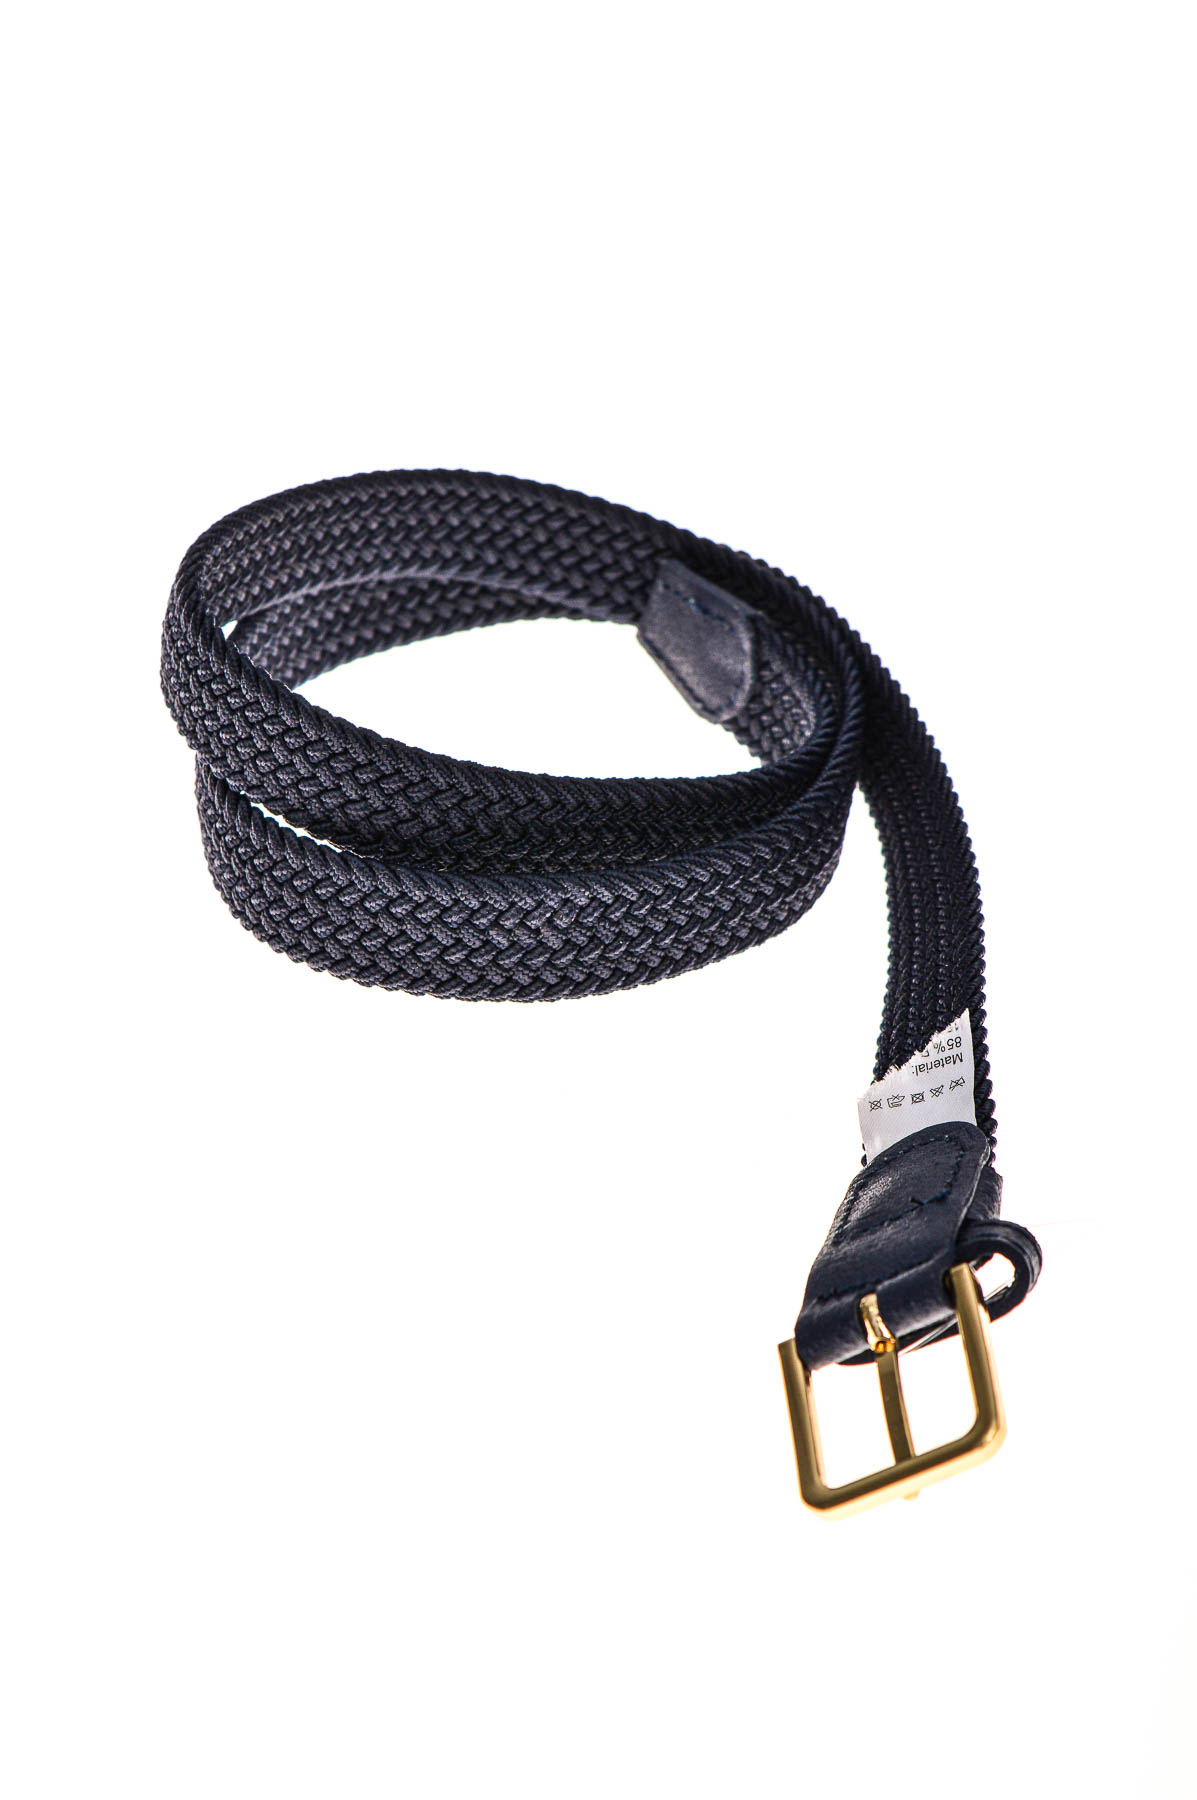 Ladies's belt - 1